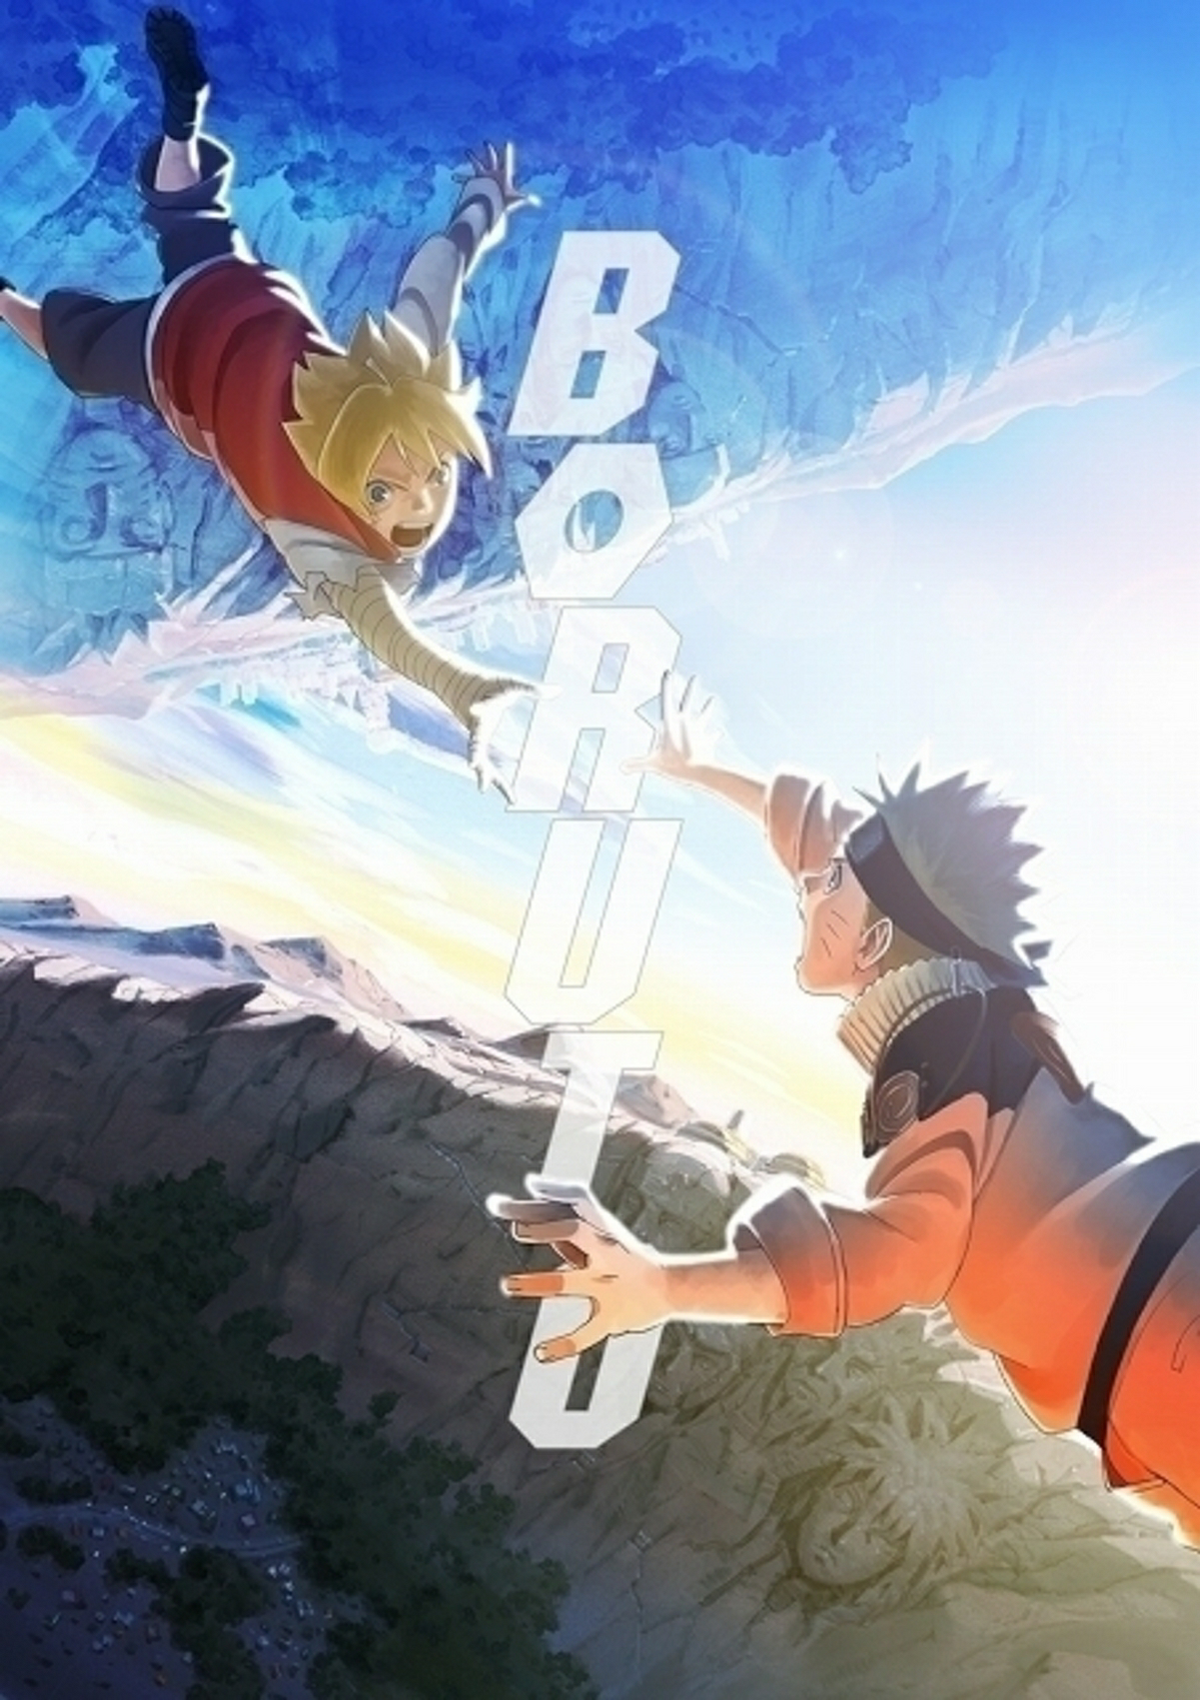 OpNerd: Novo Arco Naruto Shippuden Anime Começa Em Janeiro!